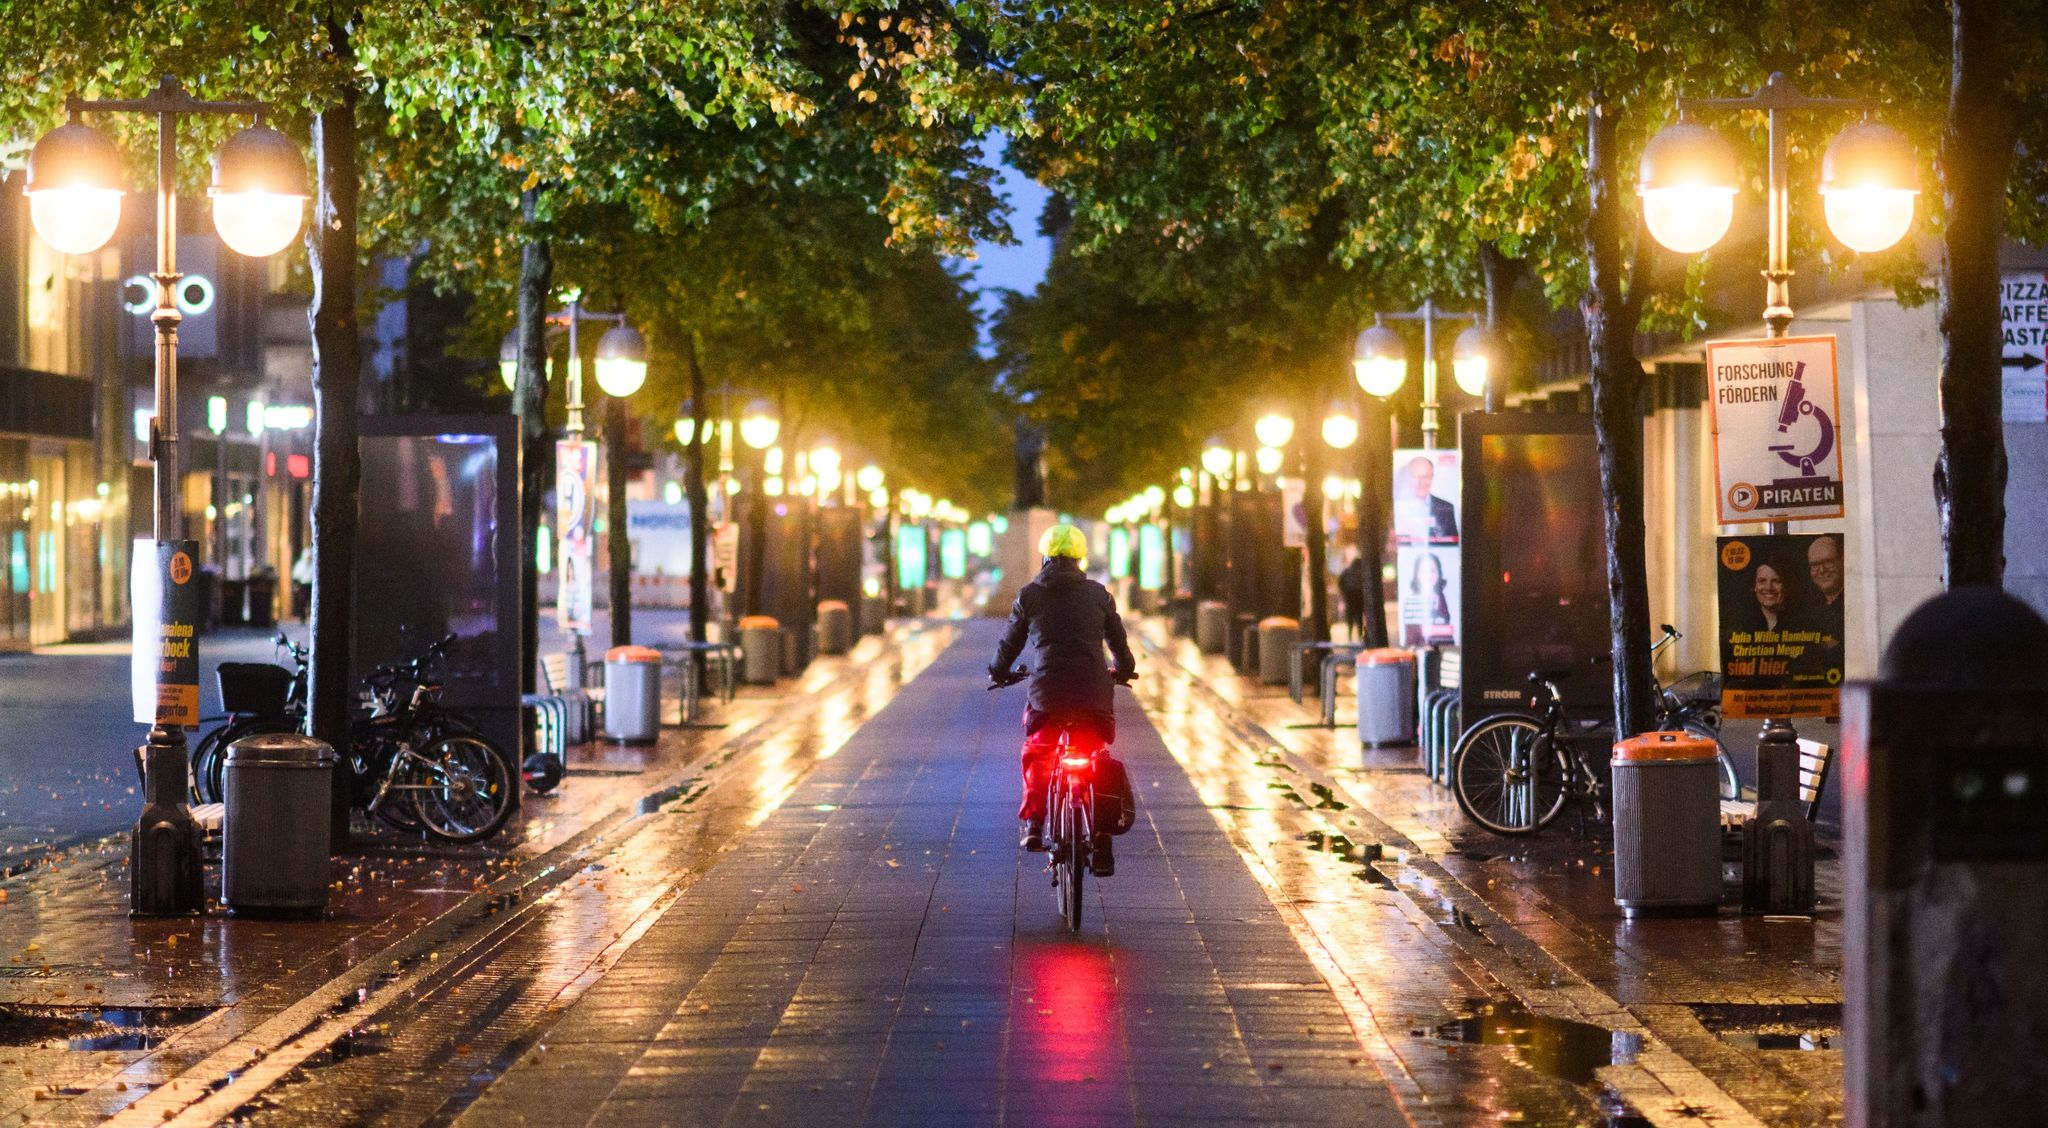 Eine Radfahrerin fährt am frühen Morgen zwischen Straßenlaternen durch die Innenstadt von Hannover.